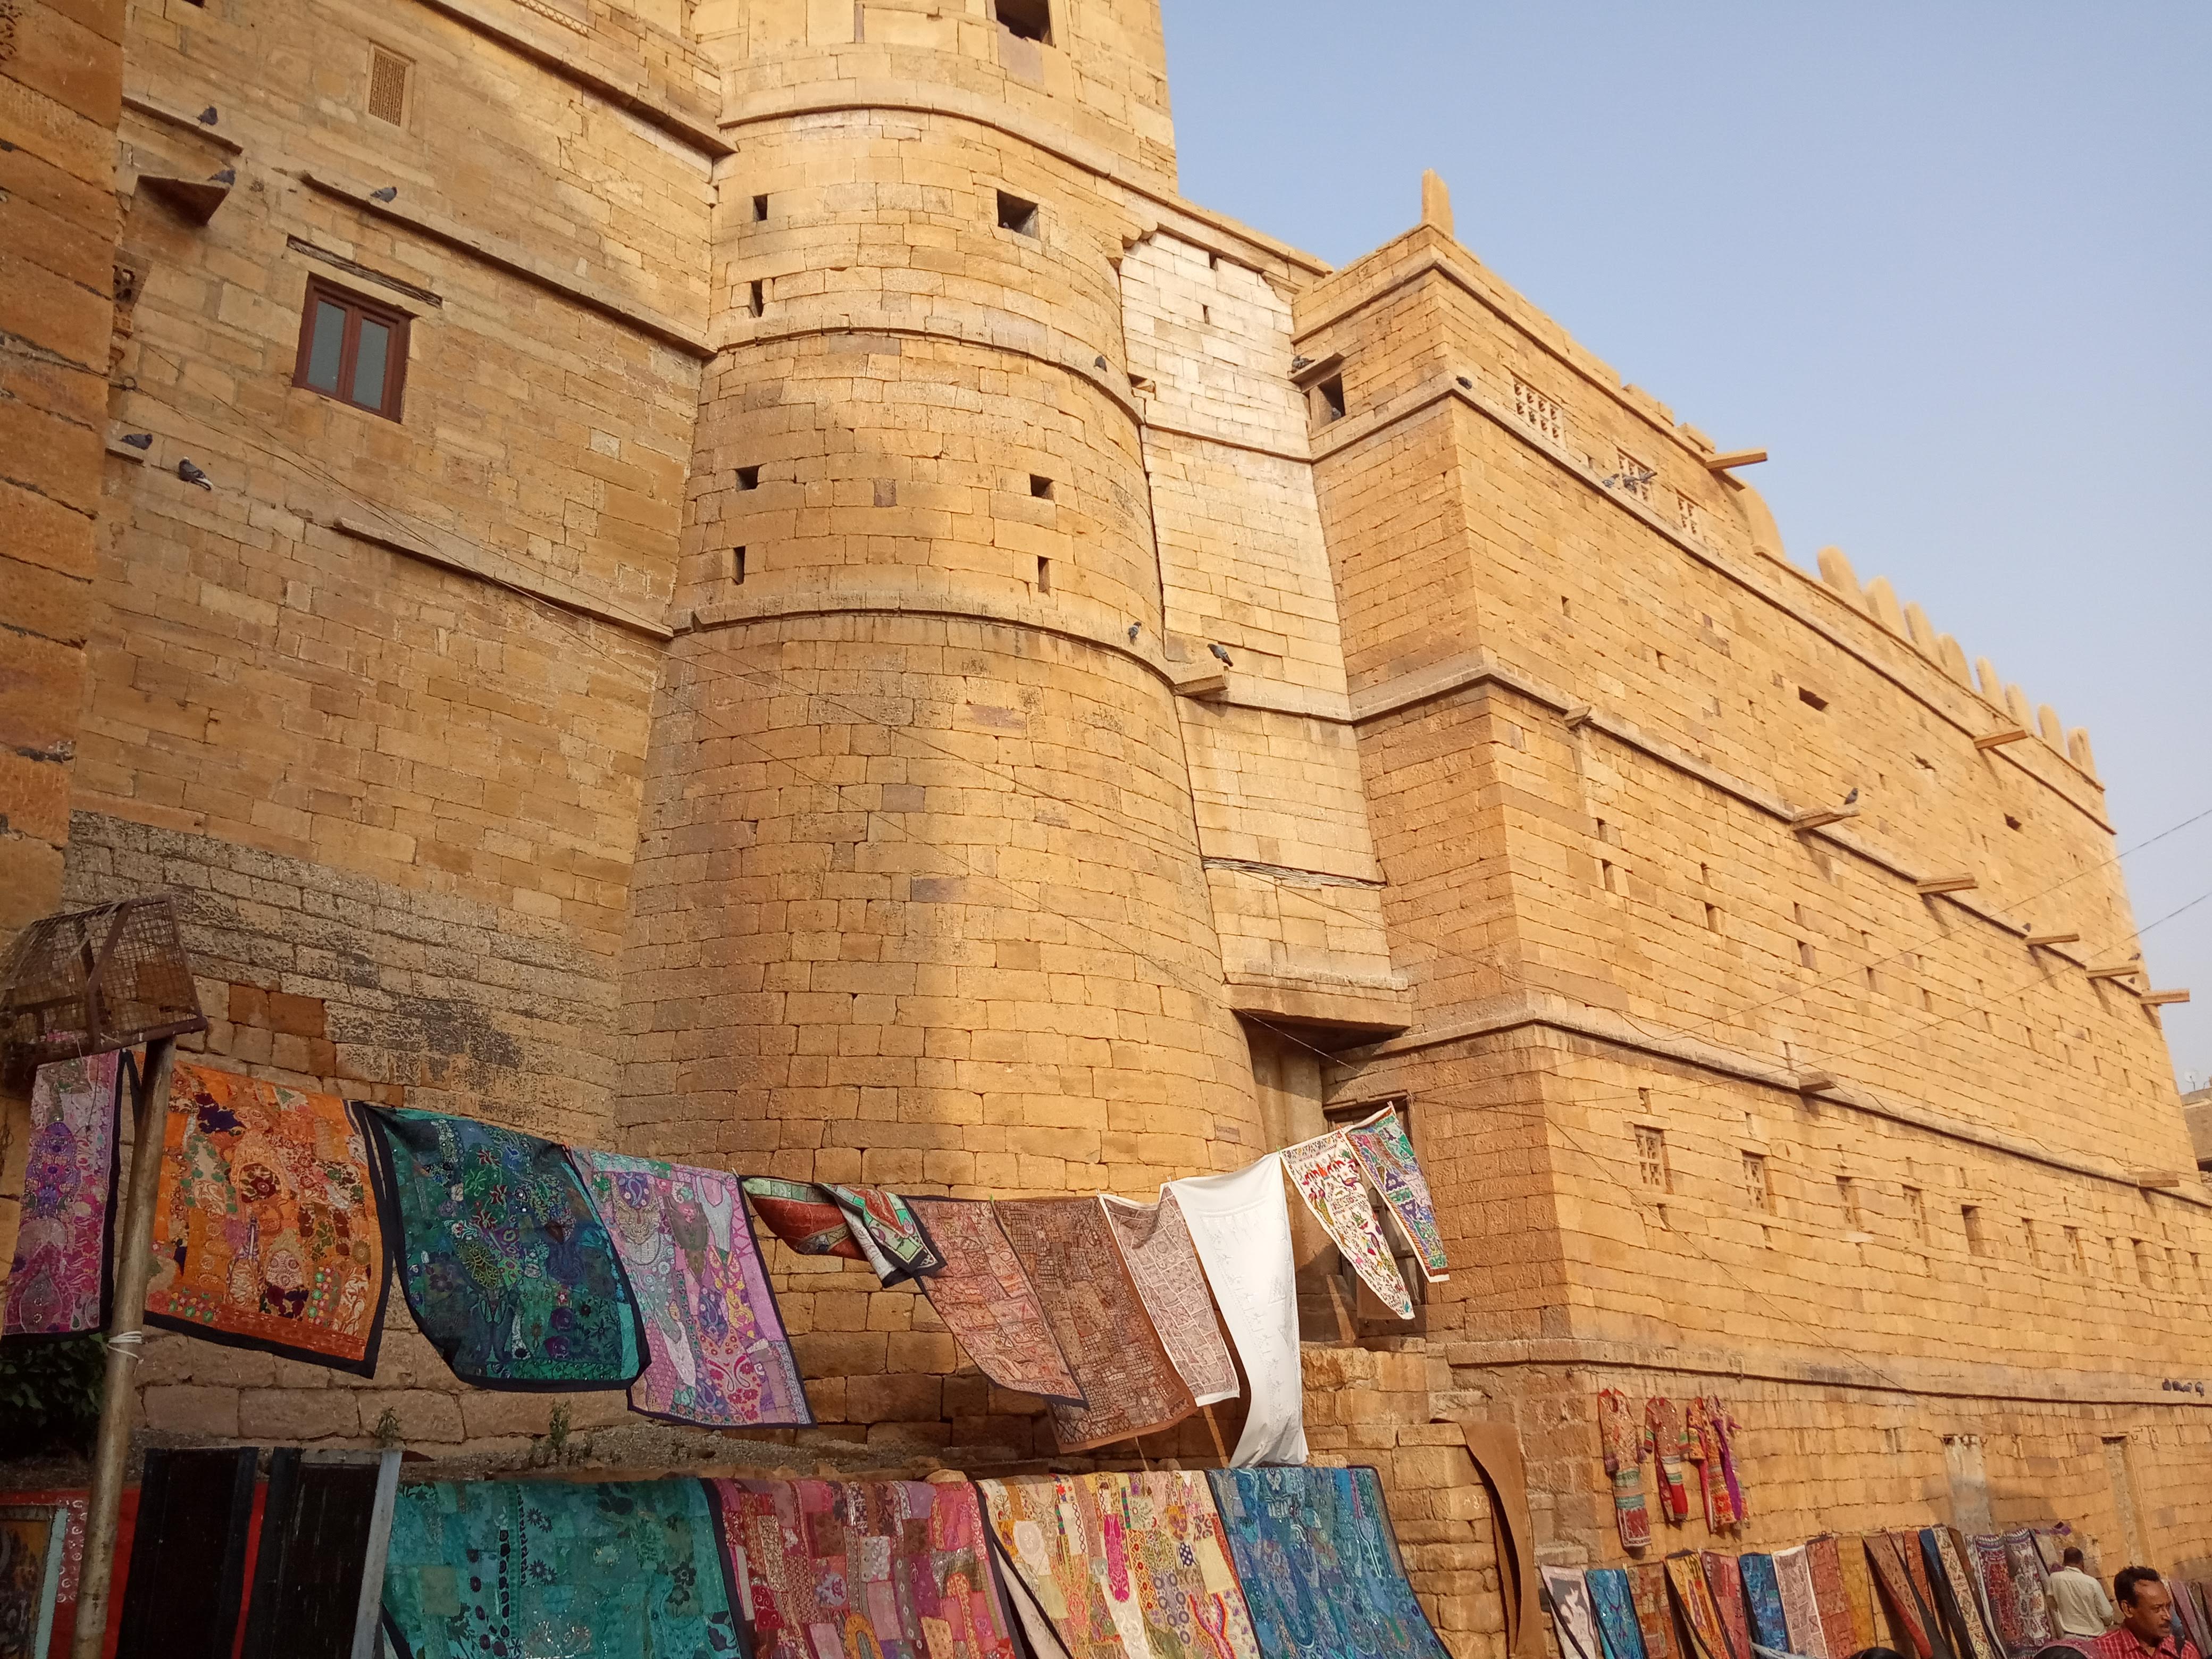 The Golden Fort in Jaisalmer